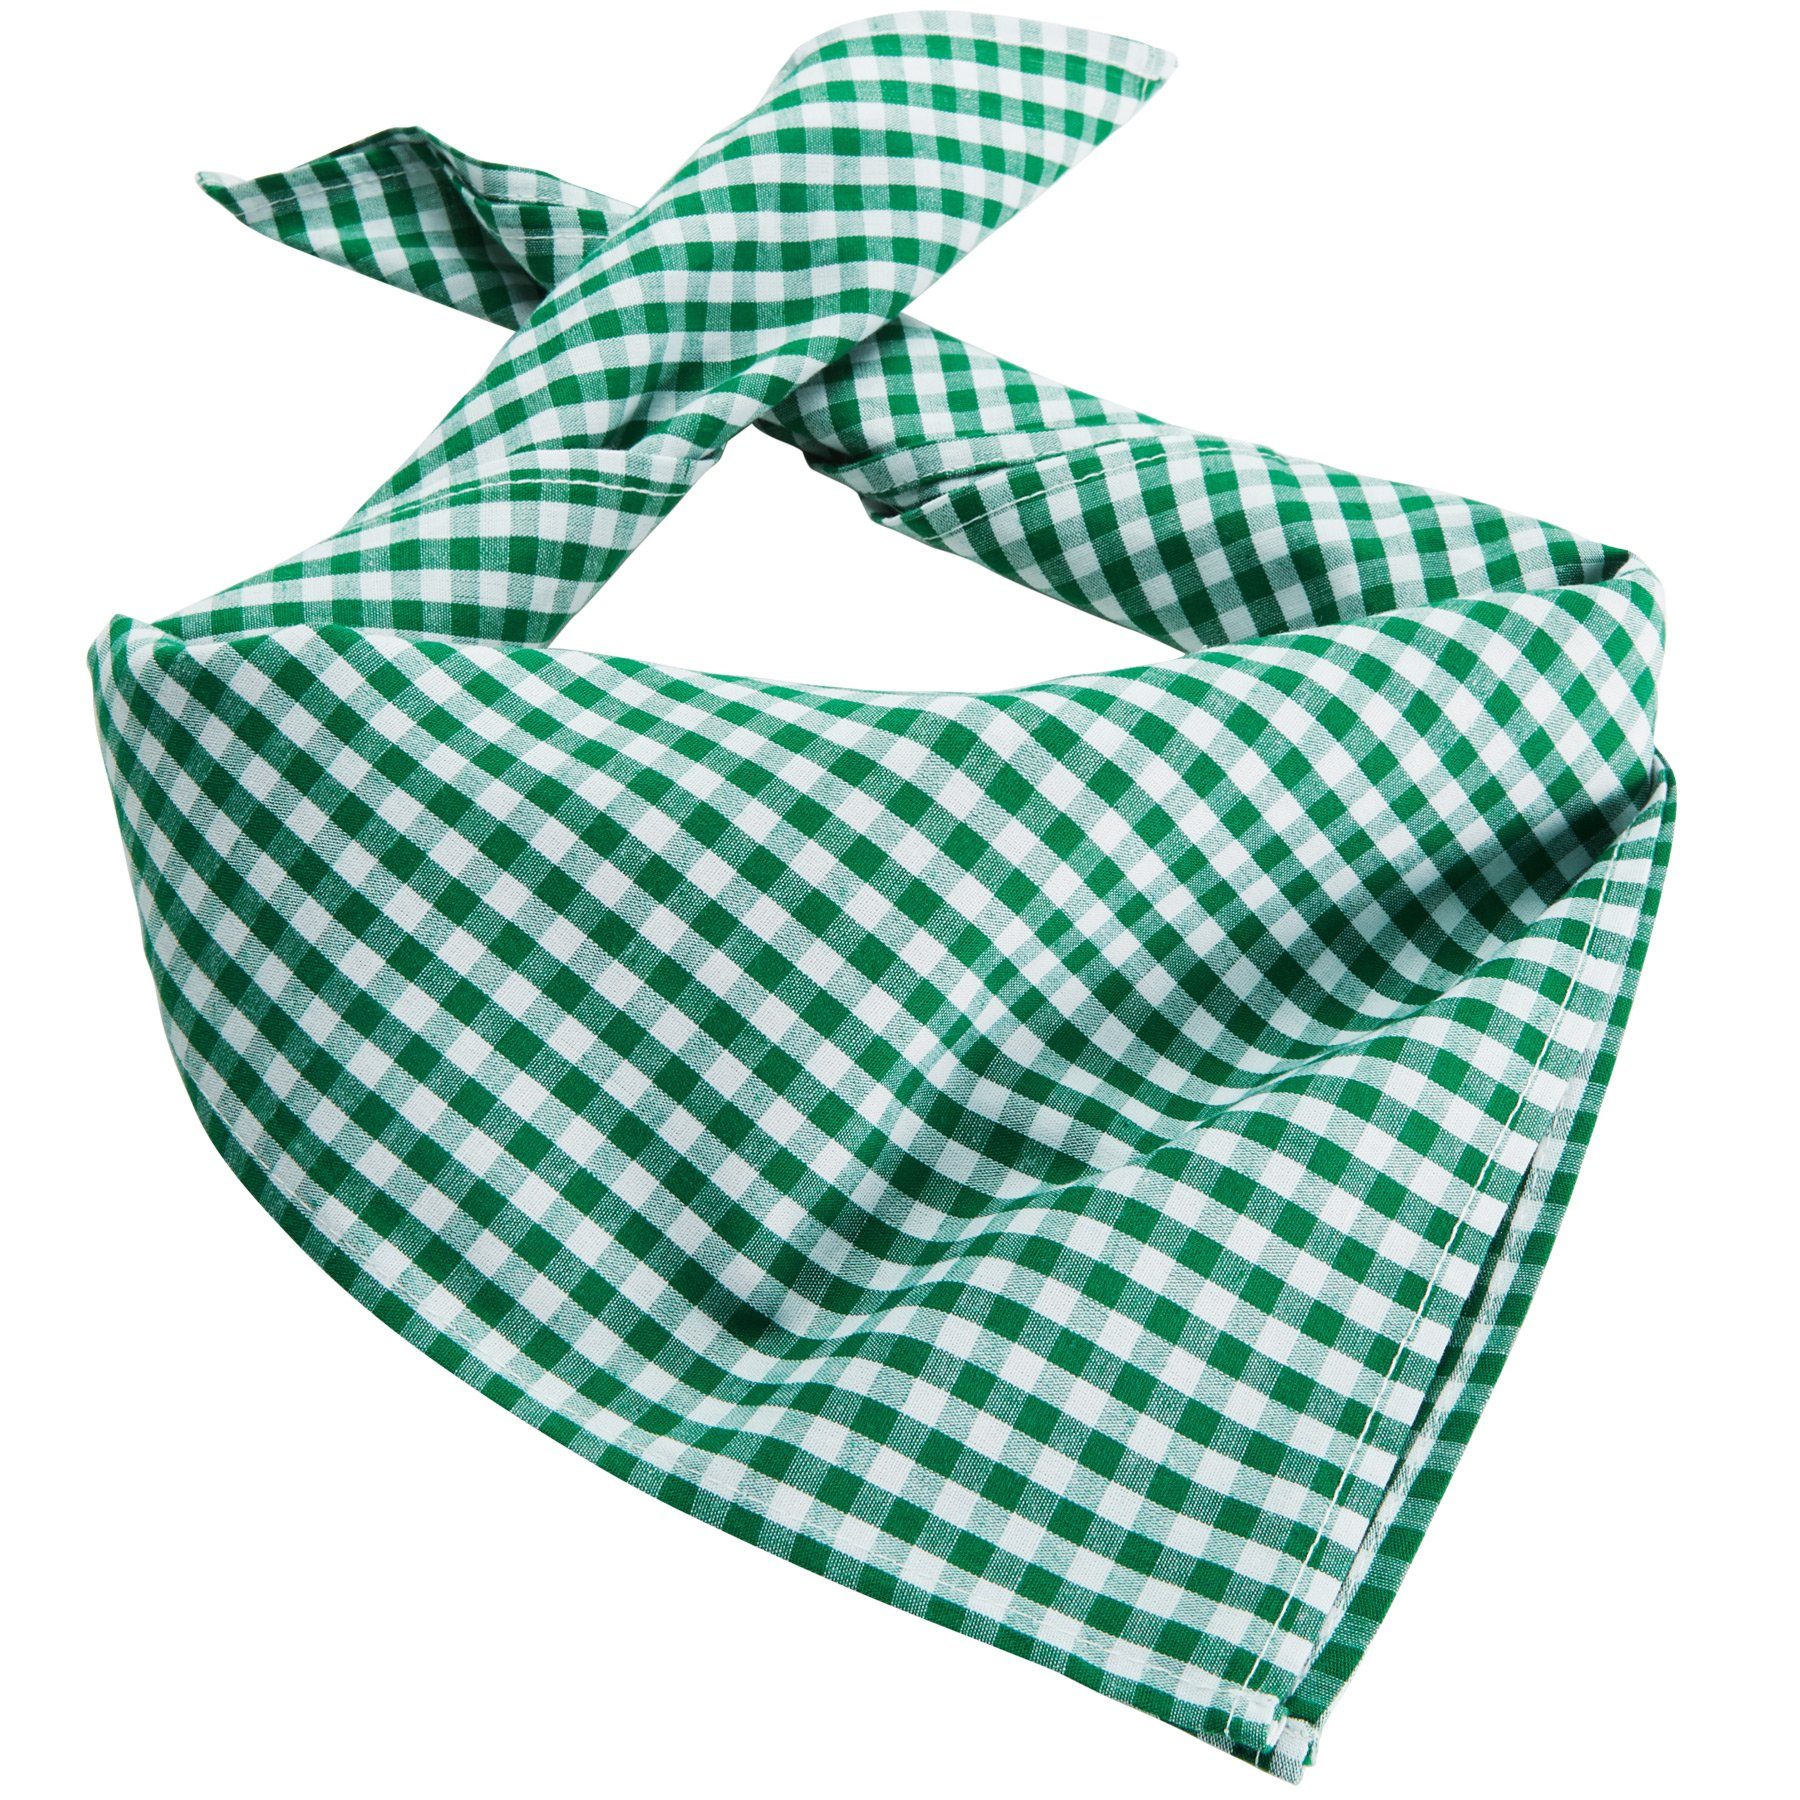 Trachtentuch dressforfun kariert grün-weiß Halstuch